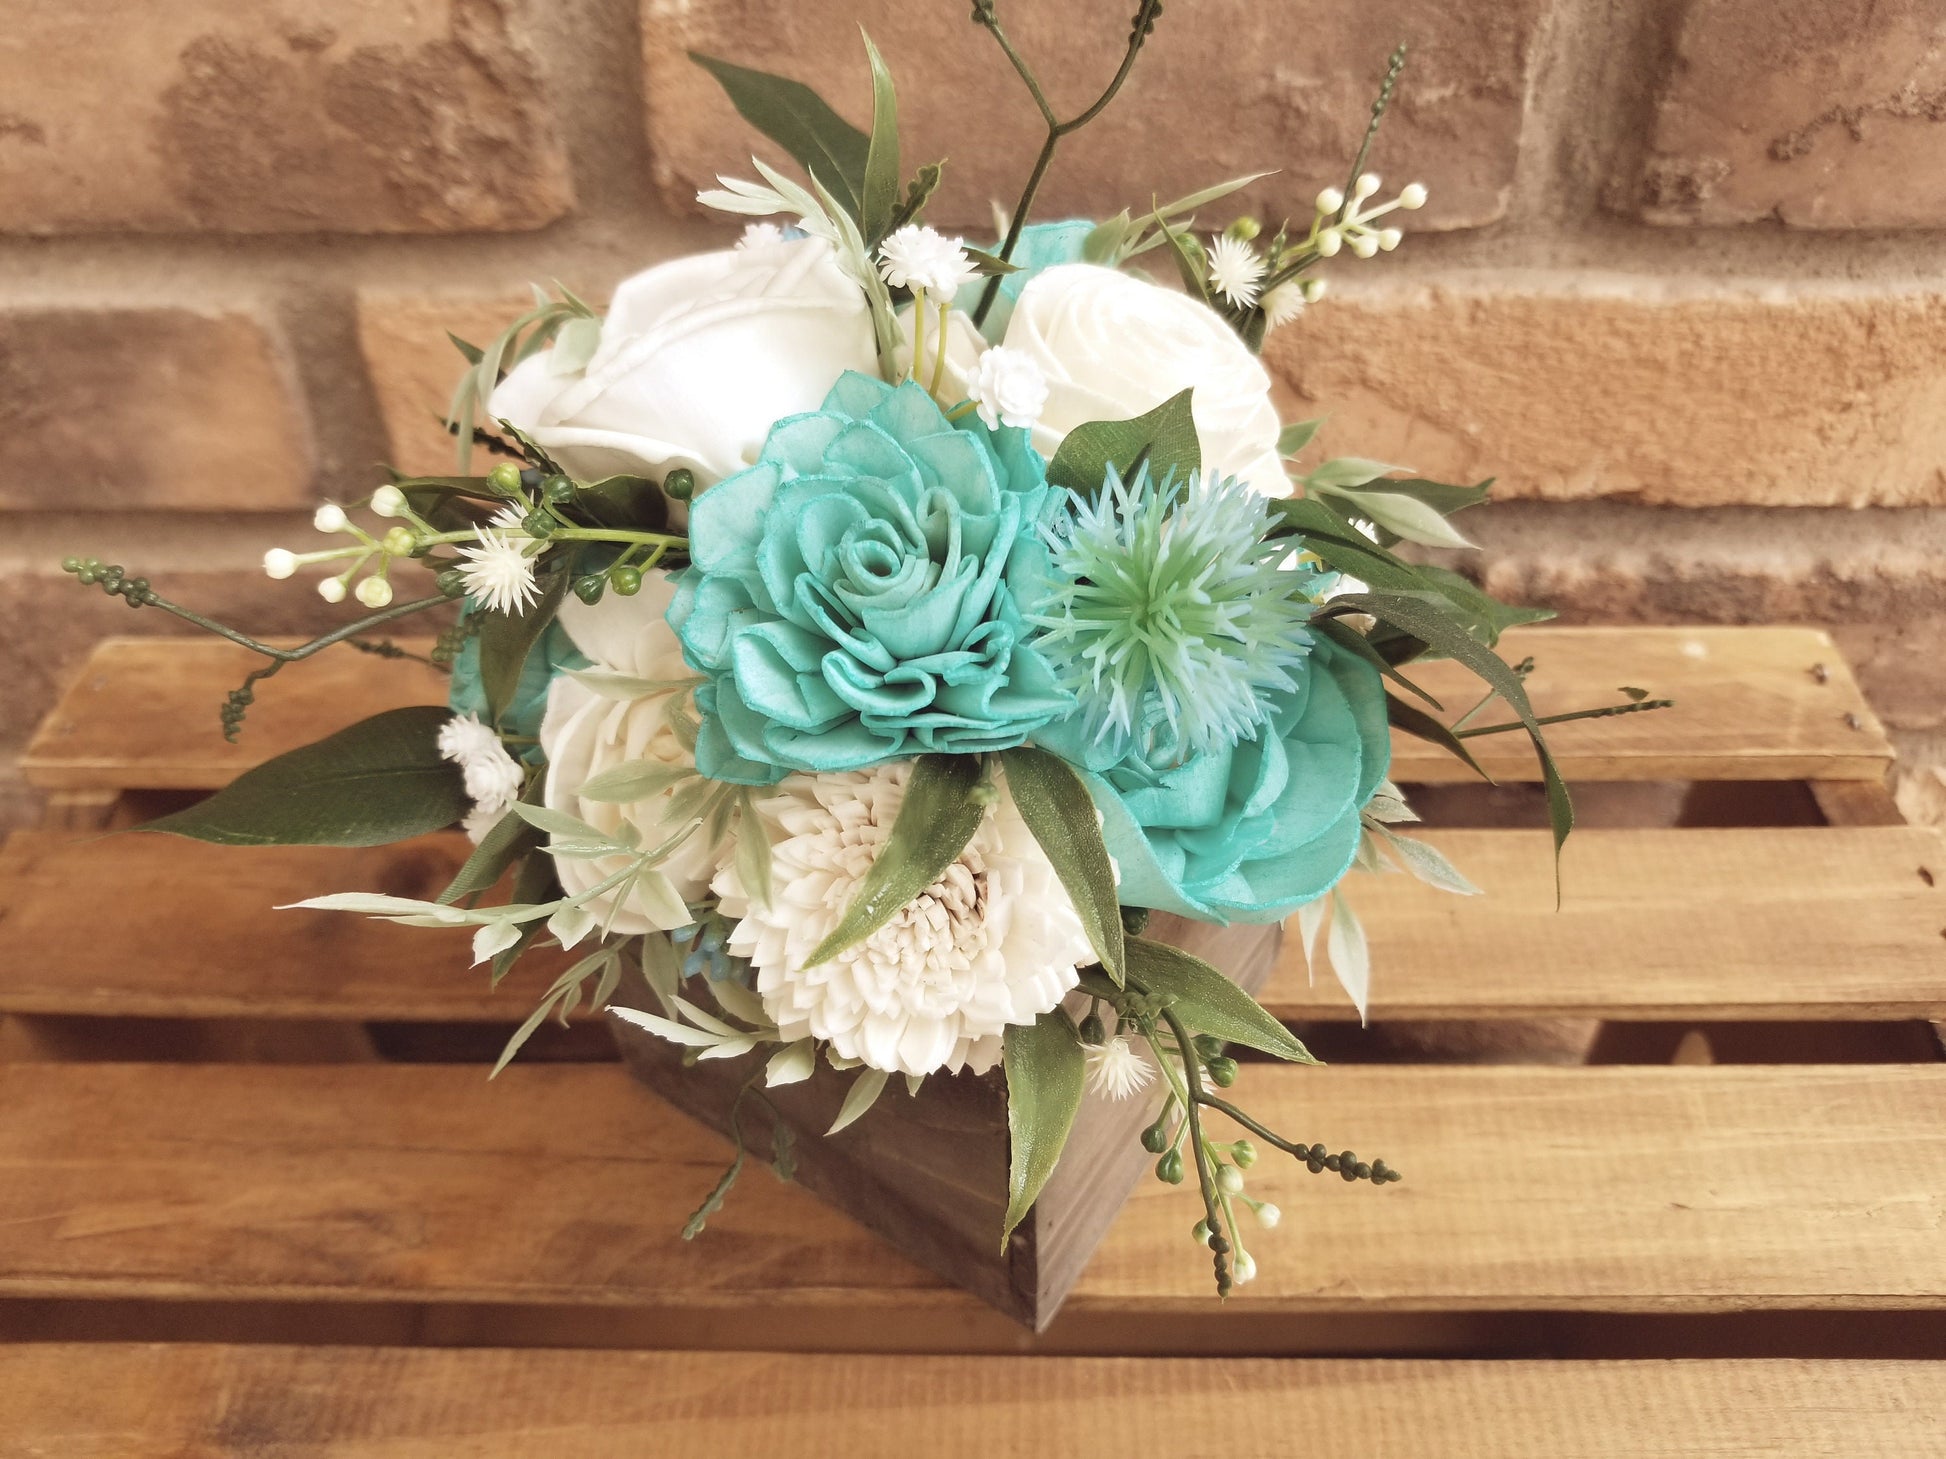 Wood Flower Floral Arrangement, Table Centerpiece, Flower Box, Wedding, Get Well, Flower Arrangement, Shelf Decor Mother's Day